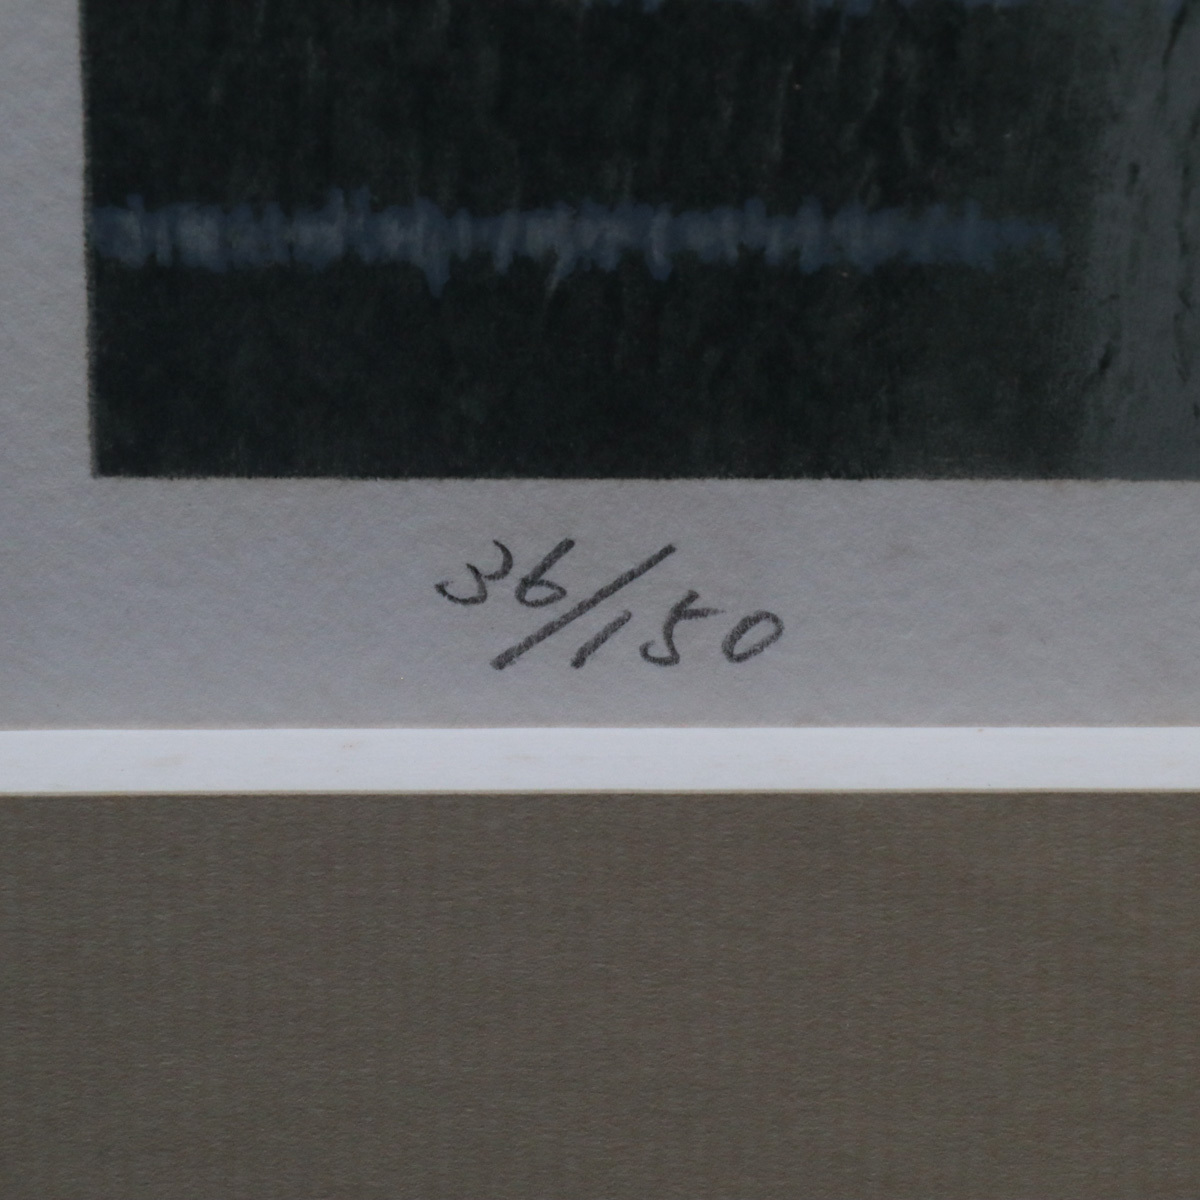 【宙】真作保証 西村龍介「杜の館」リトグラフ 36/150 サイン有 Kokey額 点描巨匠 淡い色調 静謐な古城風景 ニ科会中心作家 C3NJI22.hq.Fの画像5